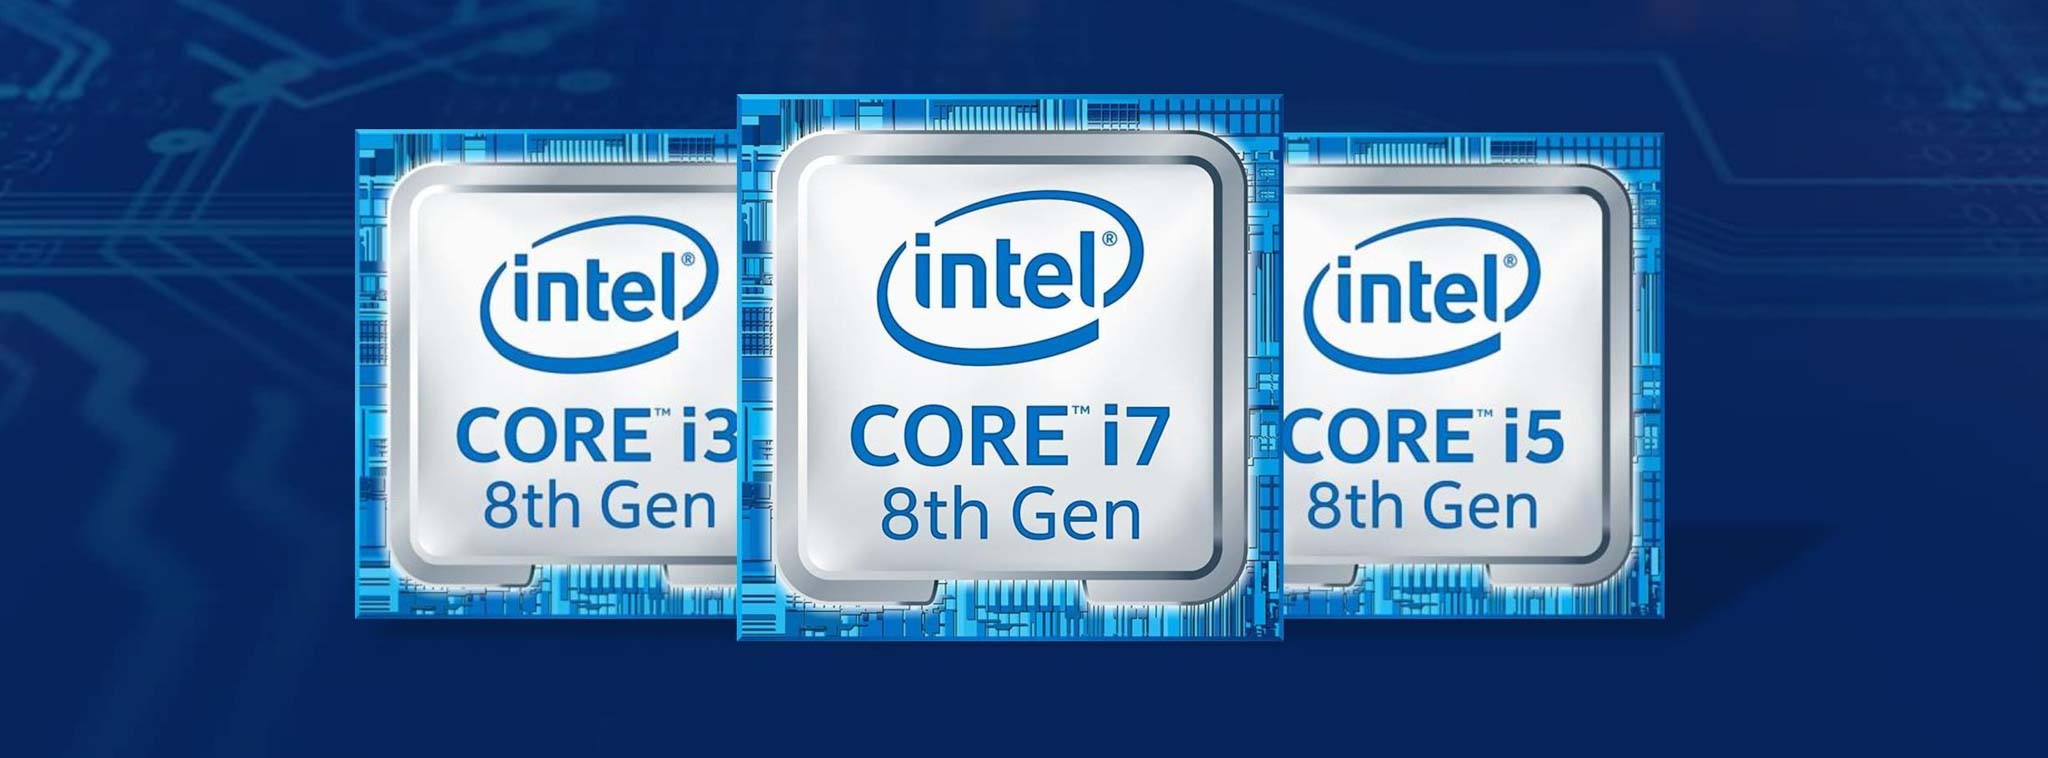 Intel sẽ bắt đầu bán CPU Coffee Lake sản xuất tại Trung Quốc từ 15/12, vẫn đảm bảo chất lượng